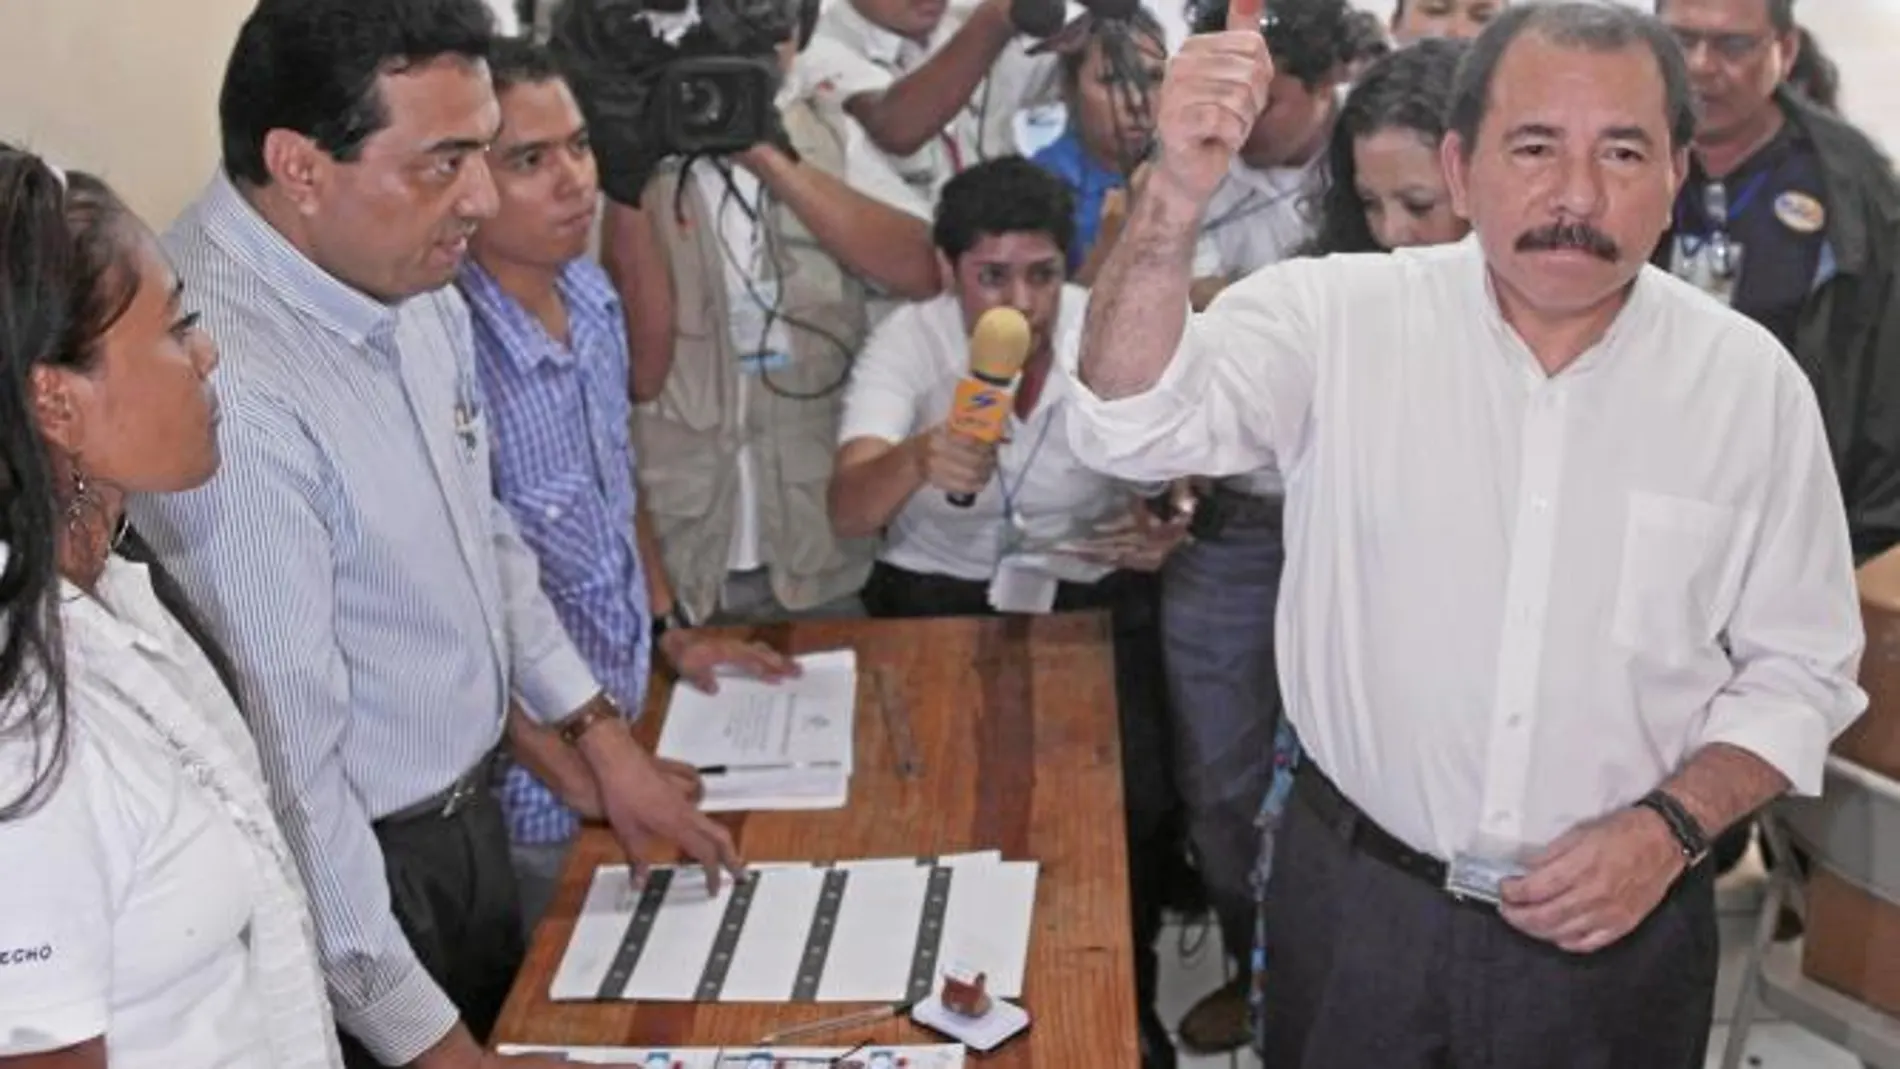 El sandinista Daniel Ortega muestra su dedo manchado de tinta tras votar ayer en Managua